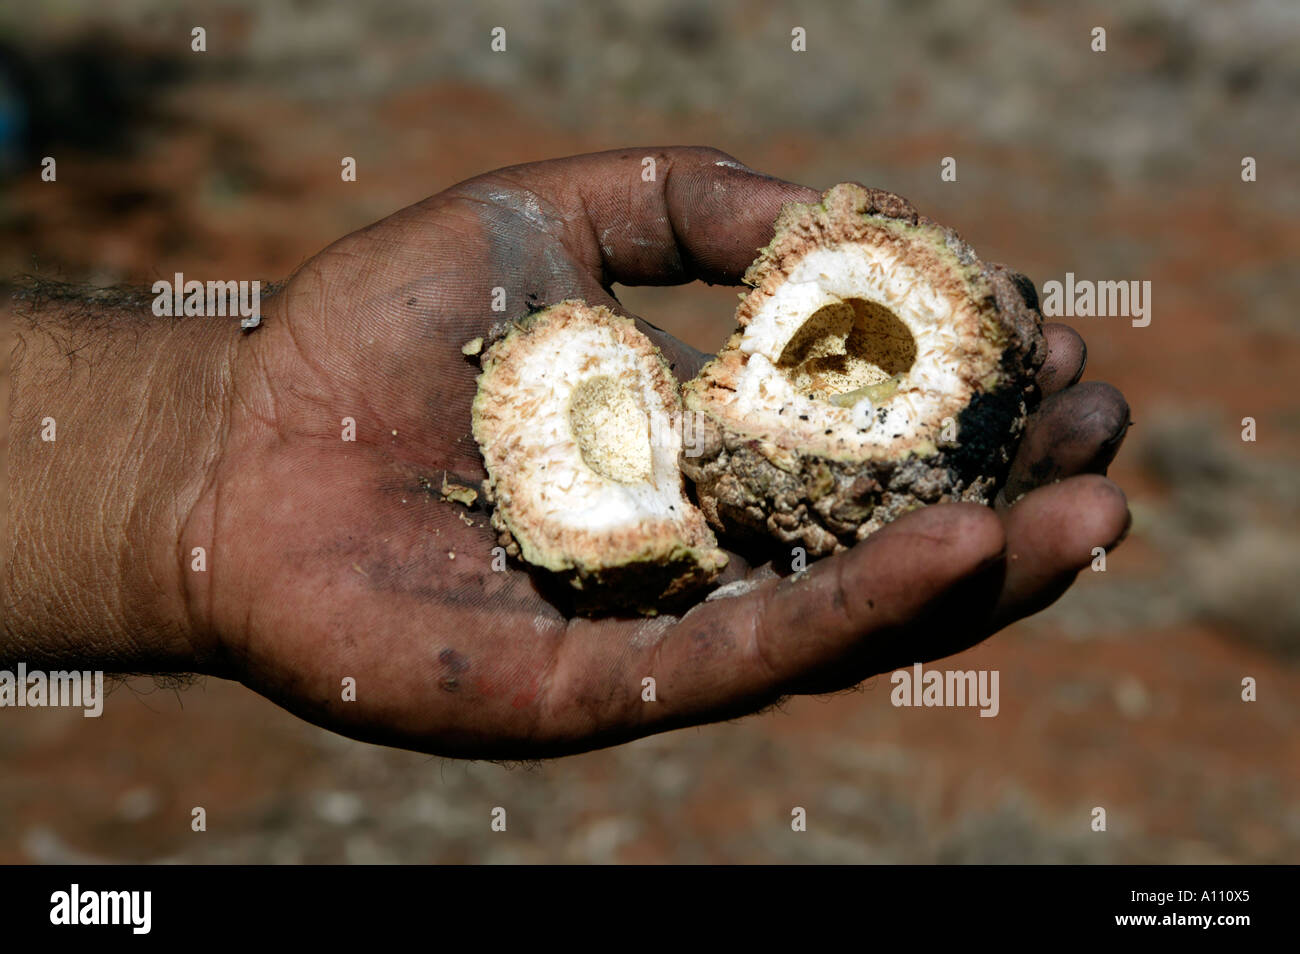 Coco arbusto come como bush tucker por aborígenes, los Anangu Pitjantjara patrias, Australia del Sur. Foto de stock